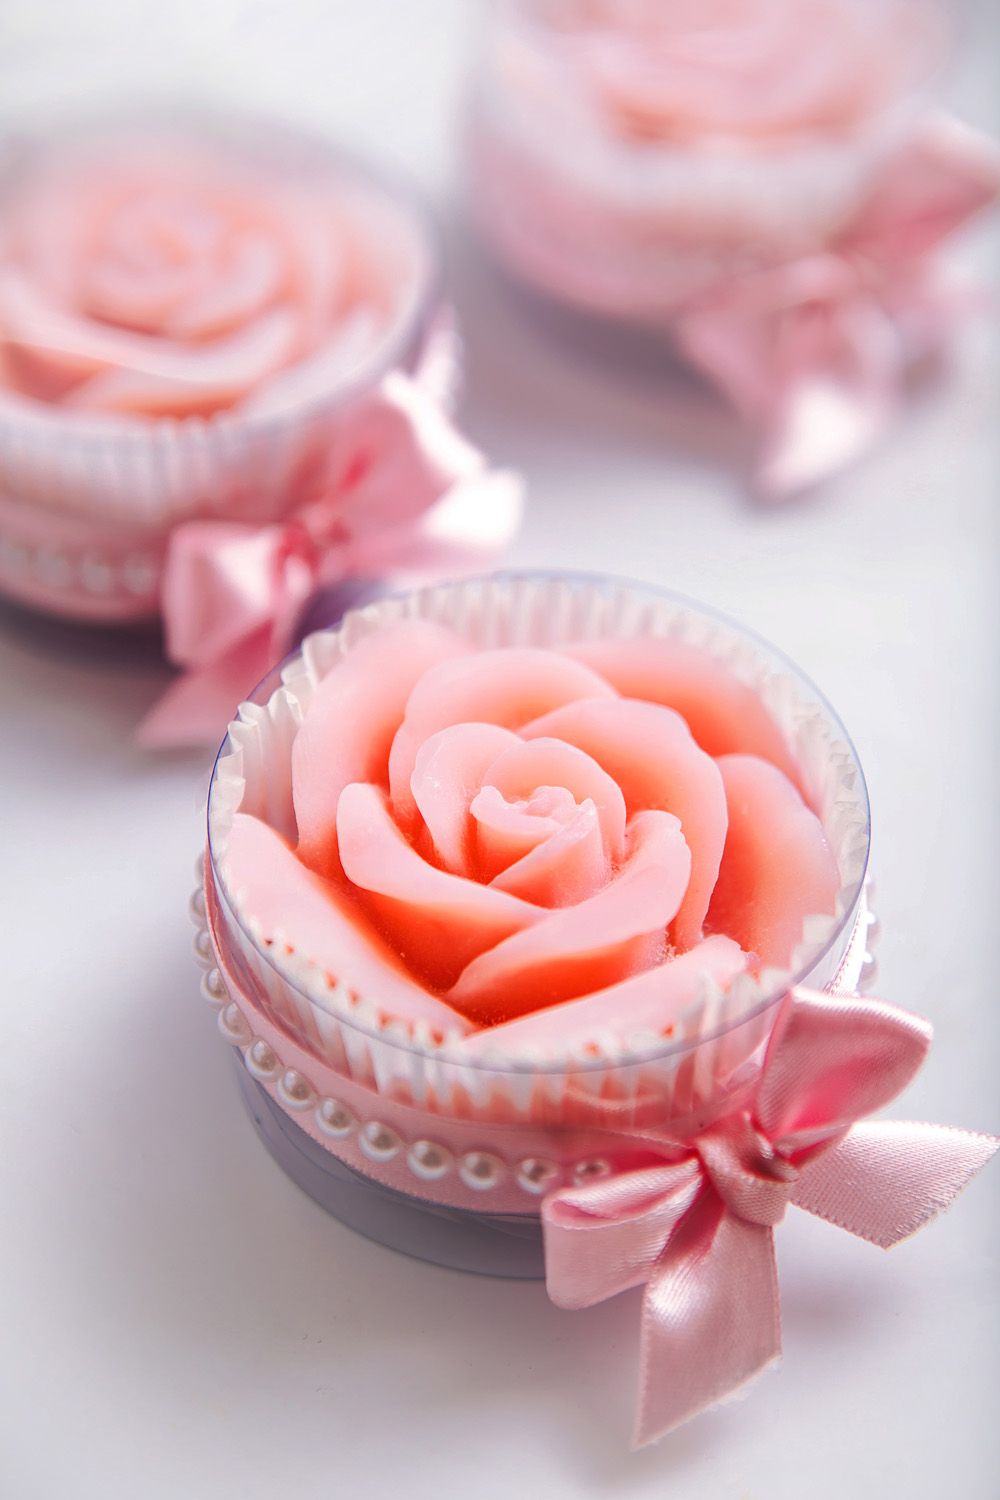 Sabonetes artesanais em formato de rosas estão super na moda.